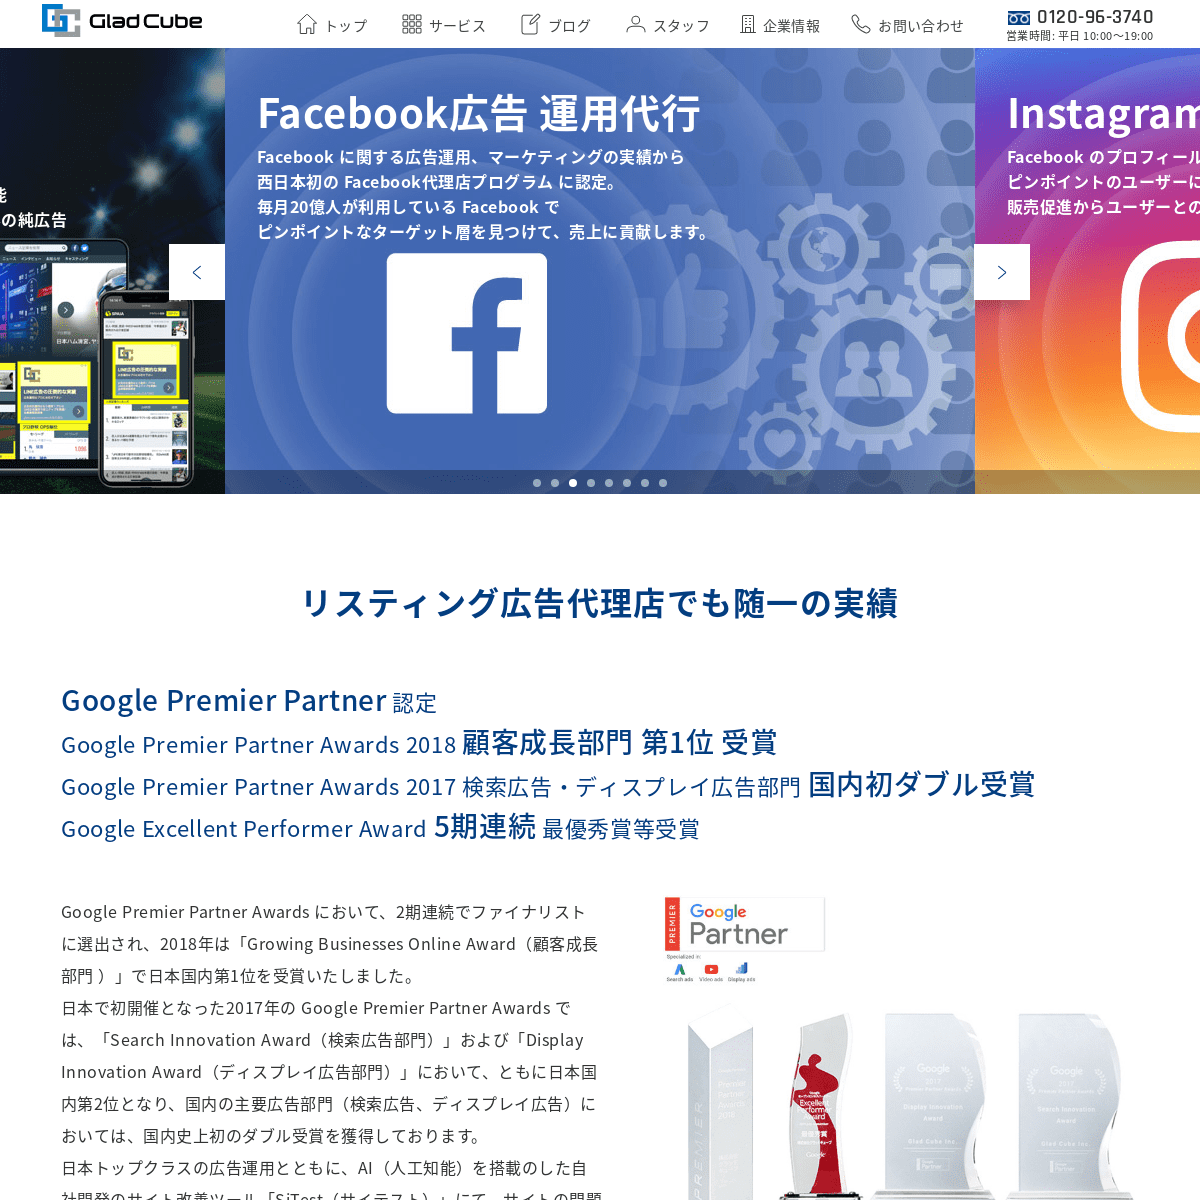 リスティング広告 運用代行サービス｜株式会社グラッドキューブ